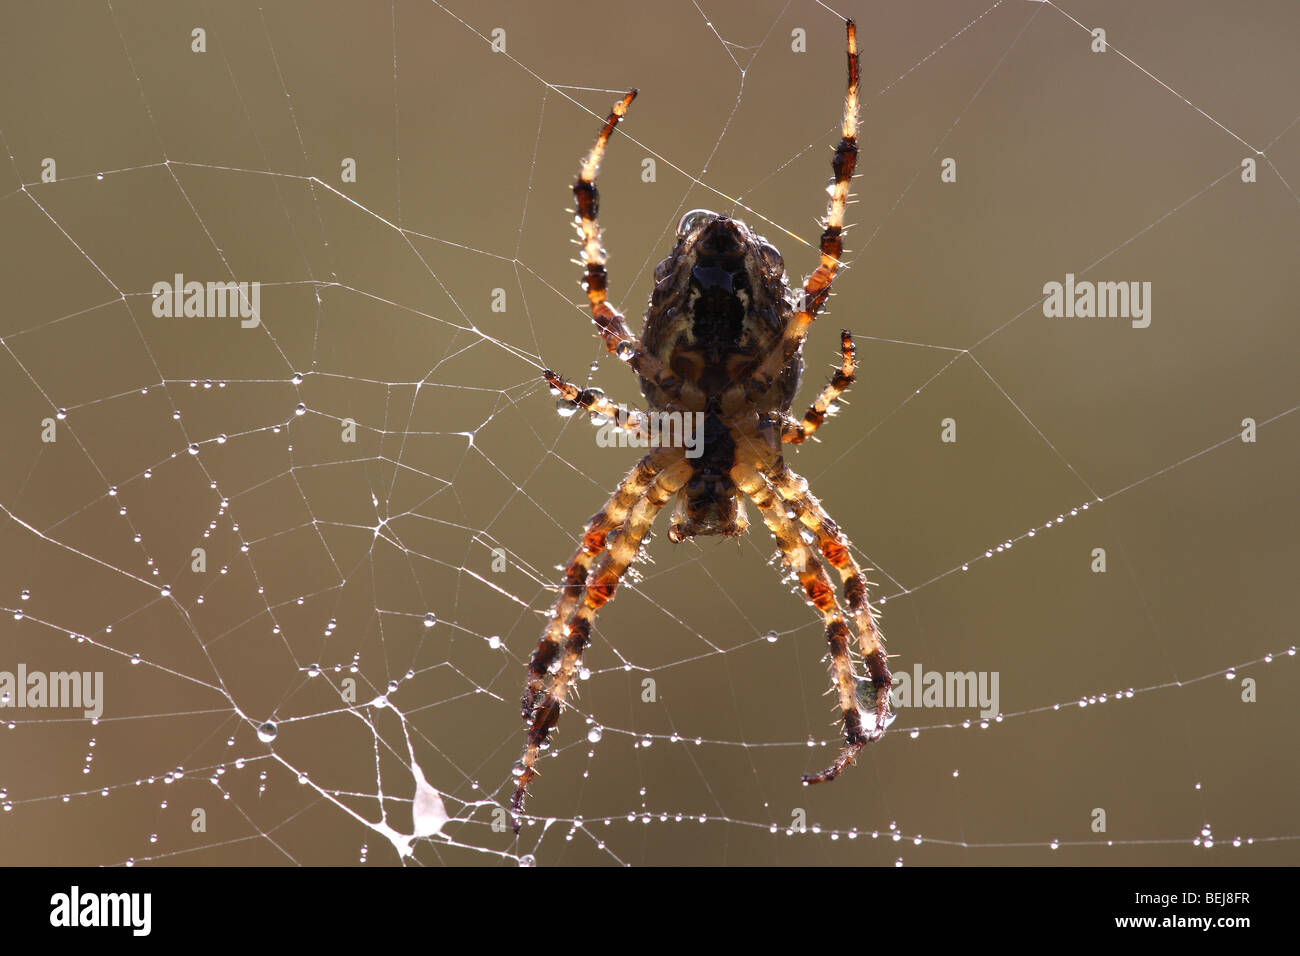 Cross spider (Araneus diadematus) in spiderweb, Belgium Stock Photo